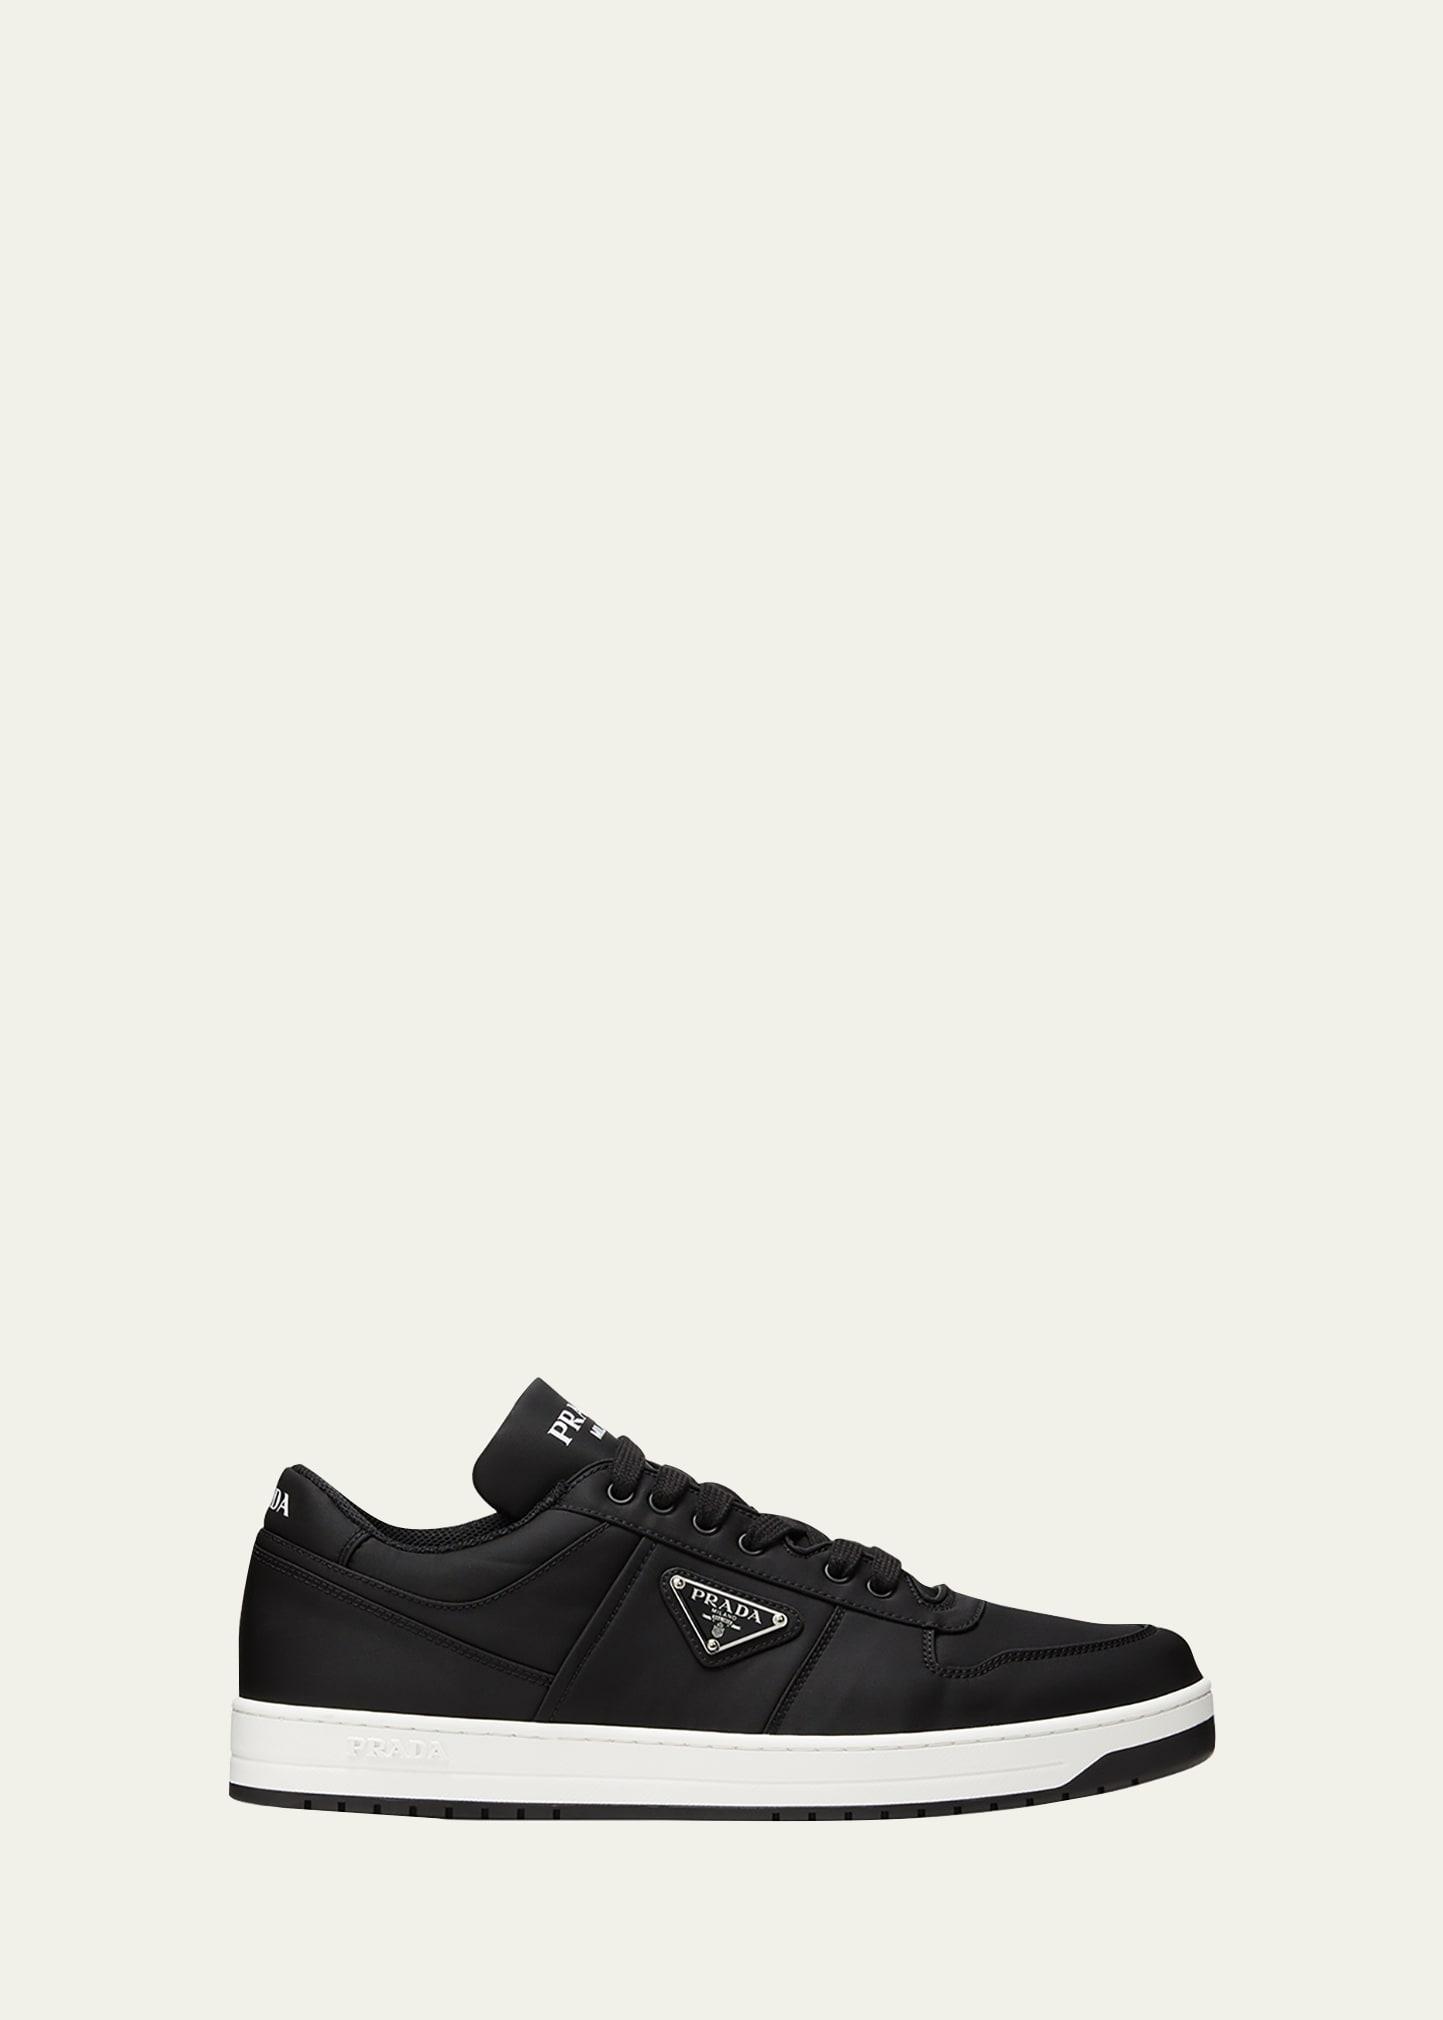 Prada Re-Nylon Low Top Sneaker Product Image